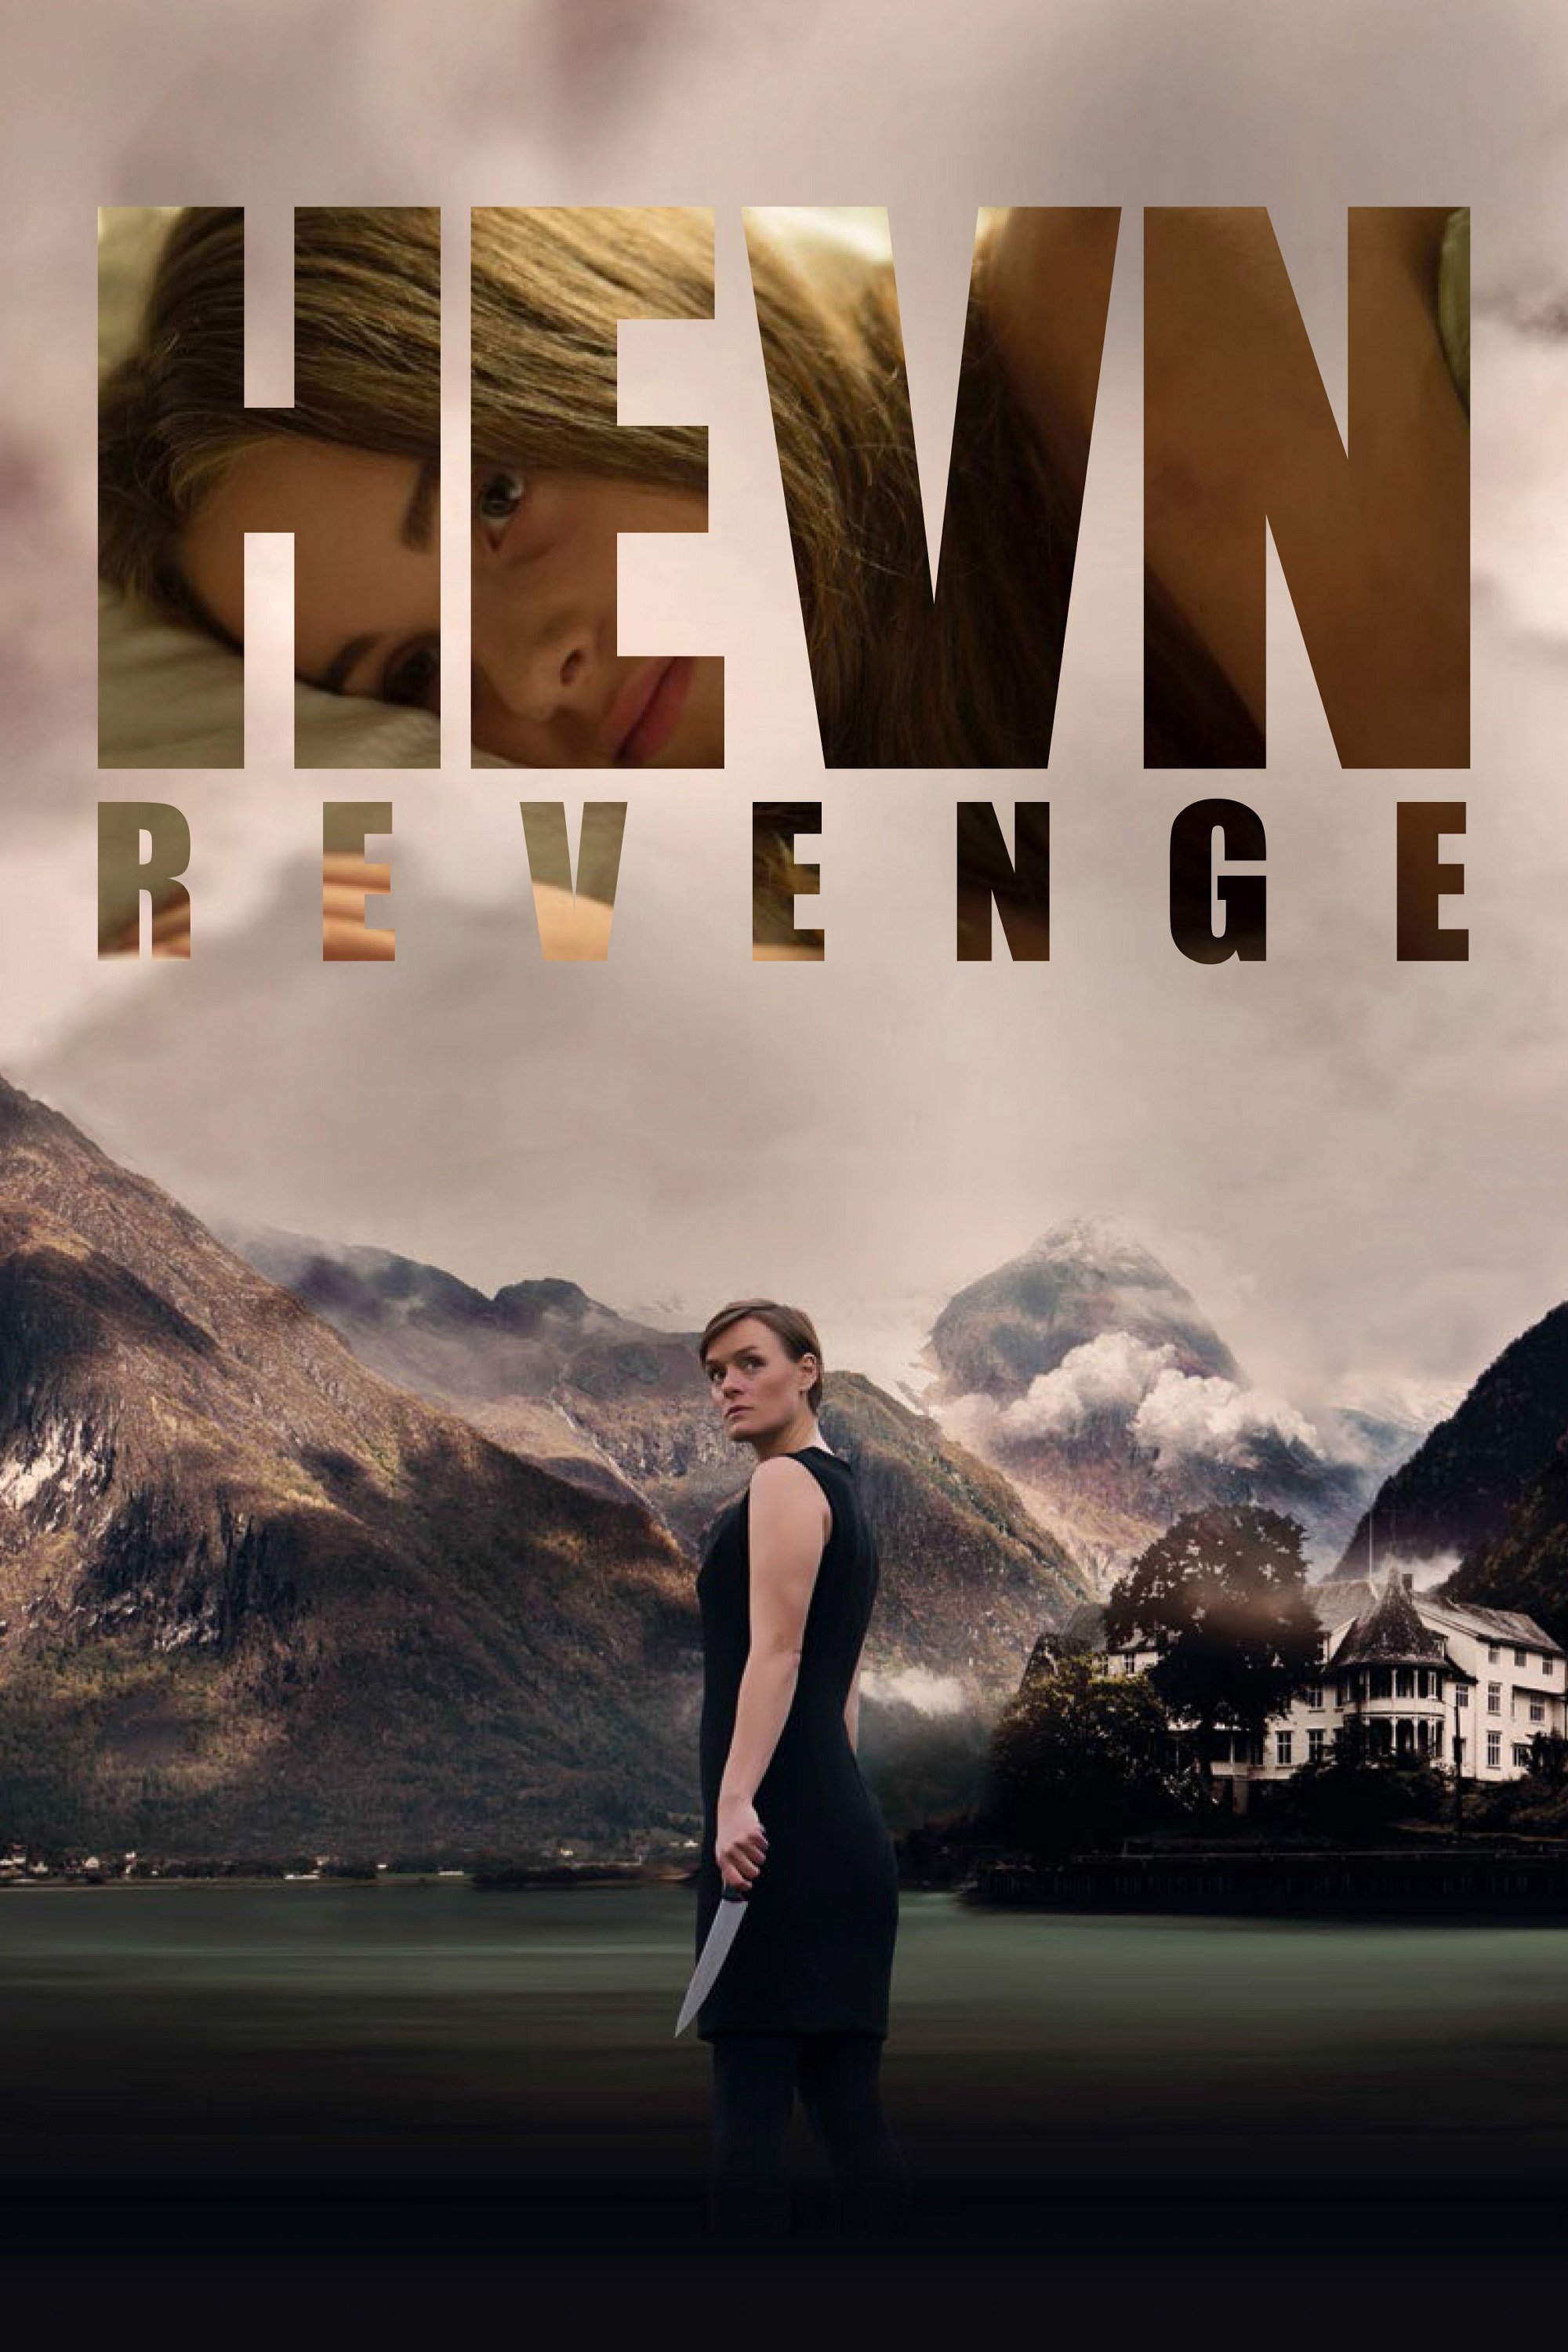 Hevn (Revenge)